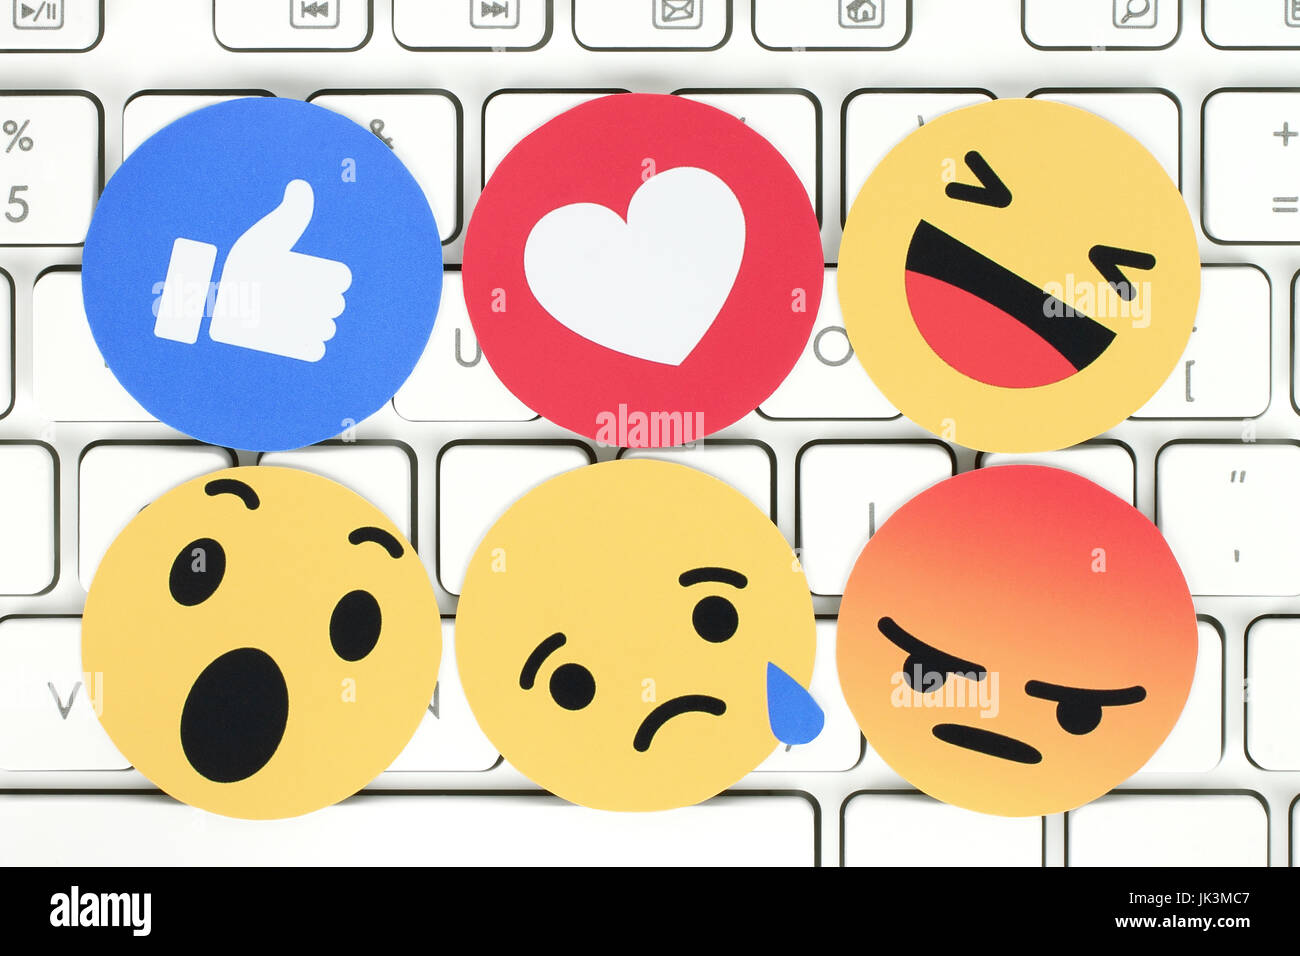 Kiev, Ukraine - 07 Février 2017 : Facebook like button 6 Réactions Emoji empathique imprimée sur du papier et placés sur un clavier d'ordinateur. Facebook est un w Banque D'Images